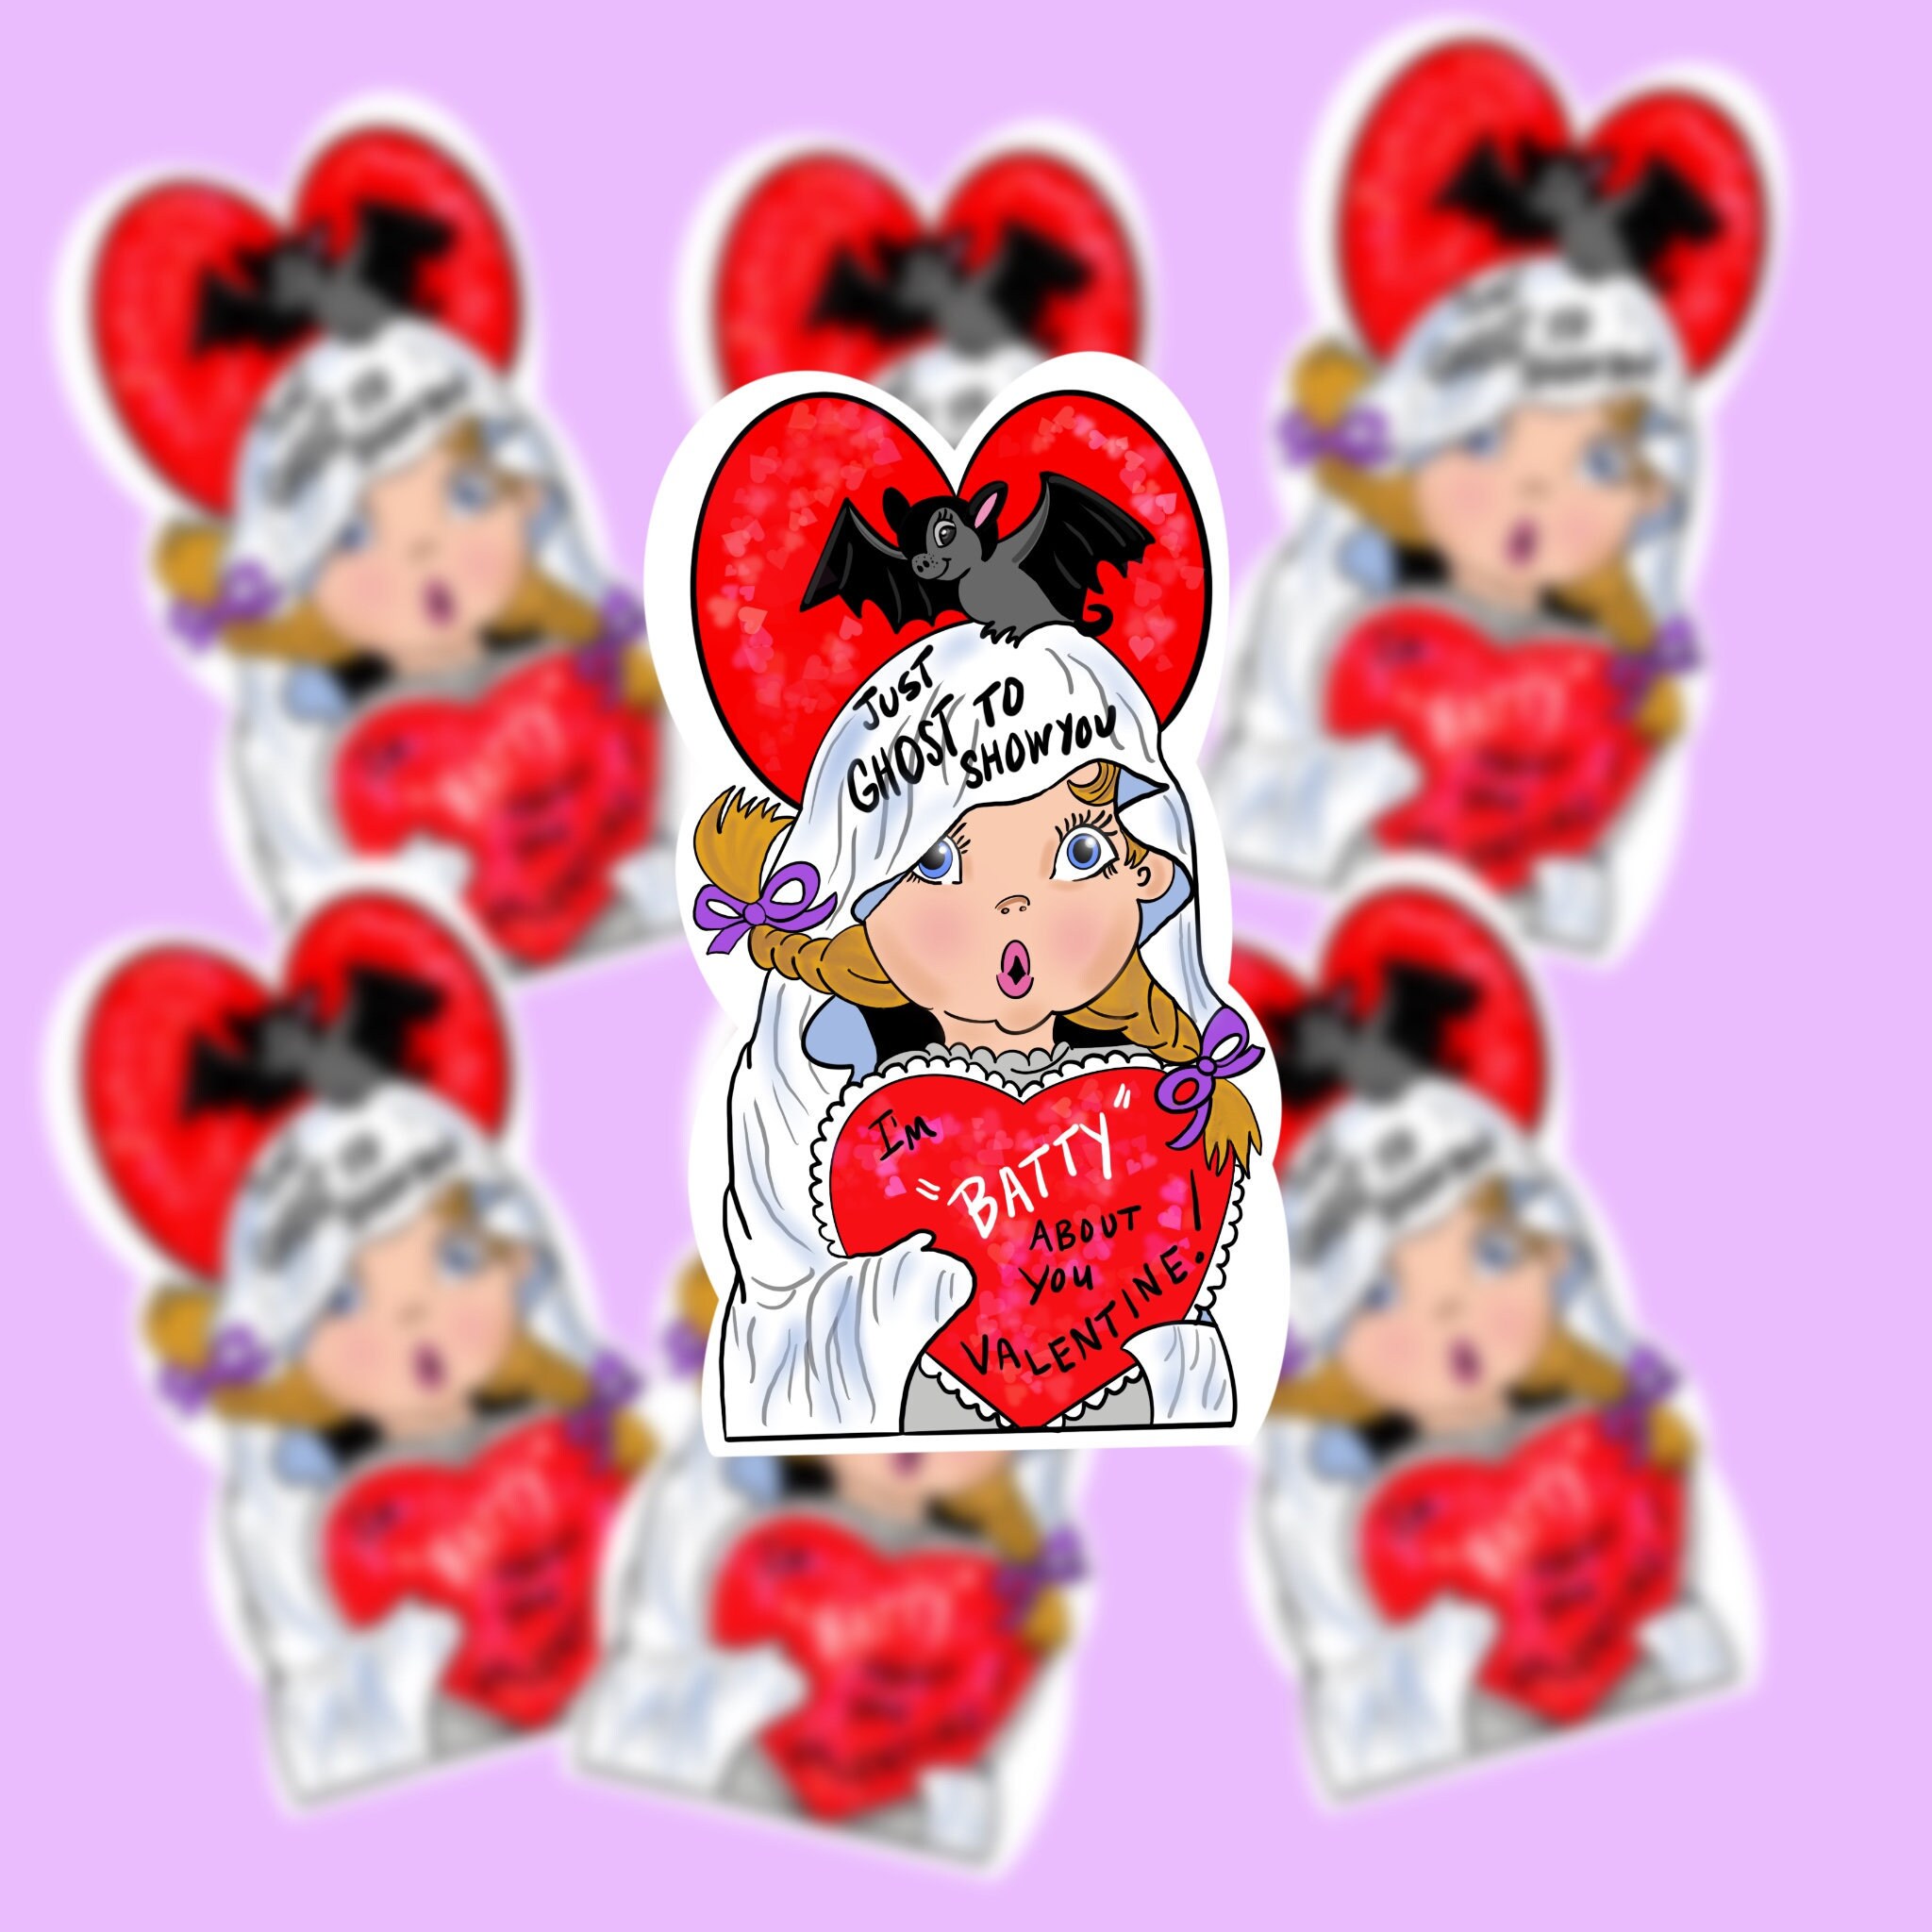 Valentine Stickers Set of 18 Handmade Stickers, Vintage Style, Vintage  Valentine, Cute Planner Stickers, Cute Valentines, Valentines Day 